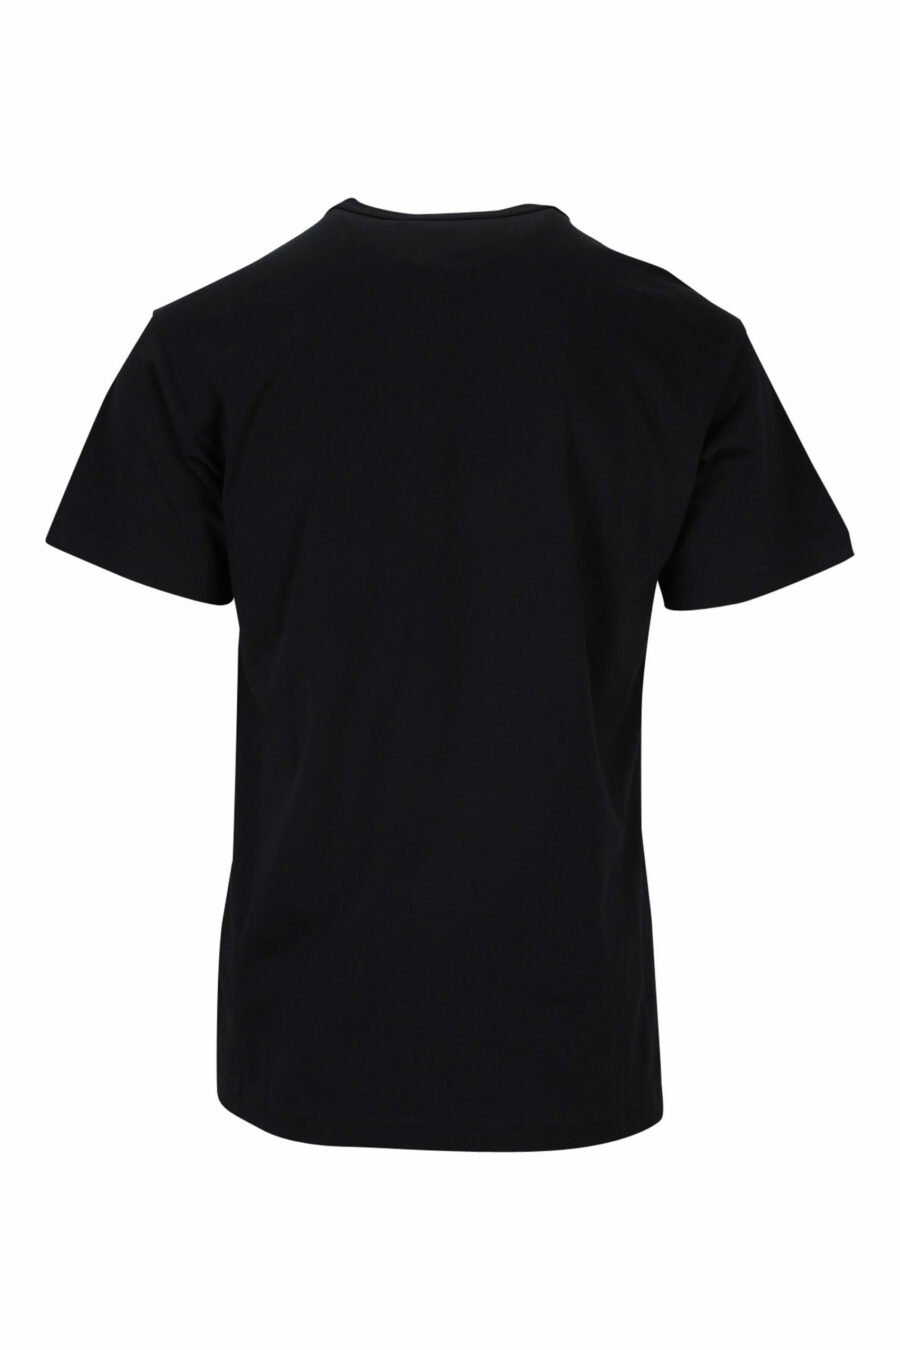 T-shirt noir avec maxilogo baroque circulaire - 8052019477481 1 scaled